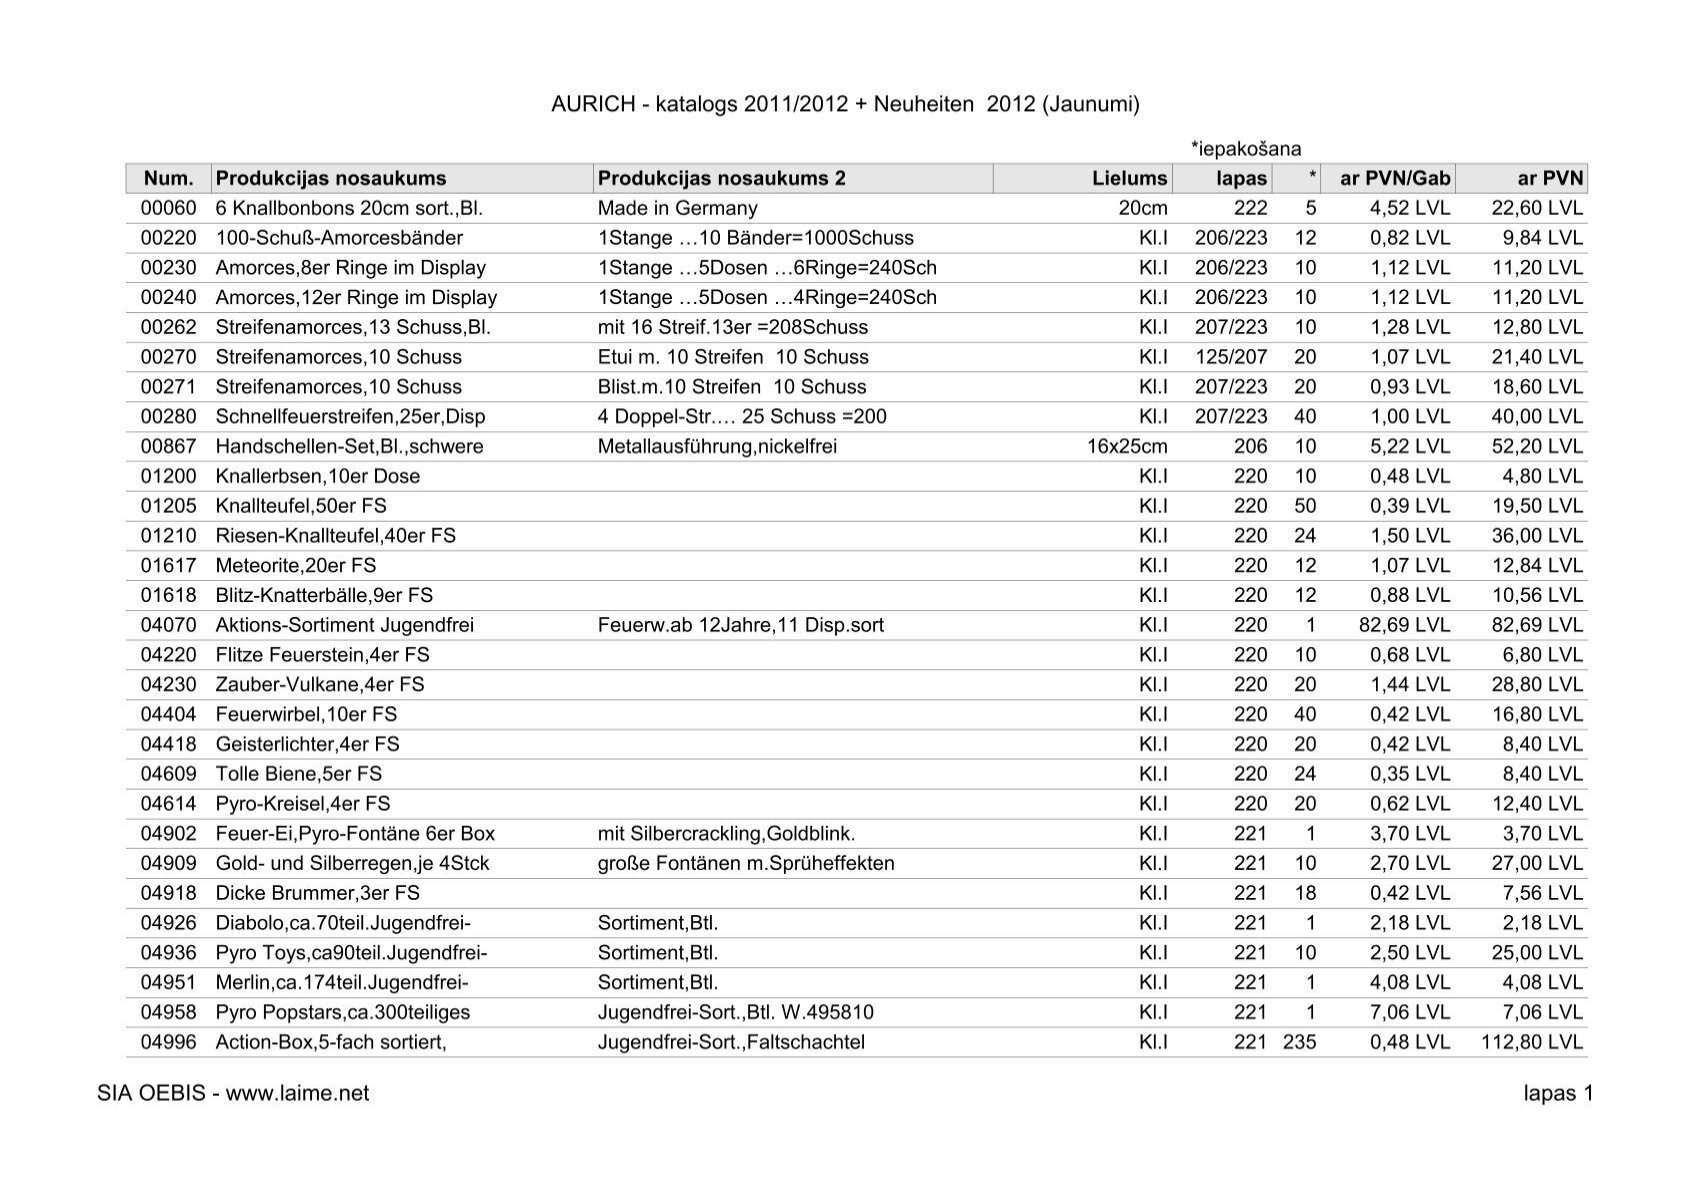 AURICH - katalogs 2011/2012 + Neuheiten 2012 (Jaunumi ... - LAIME